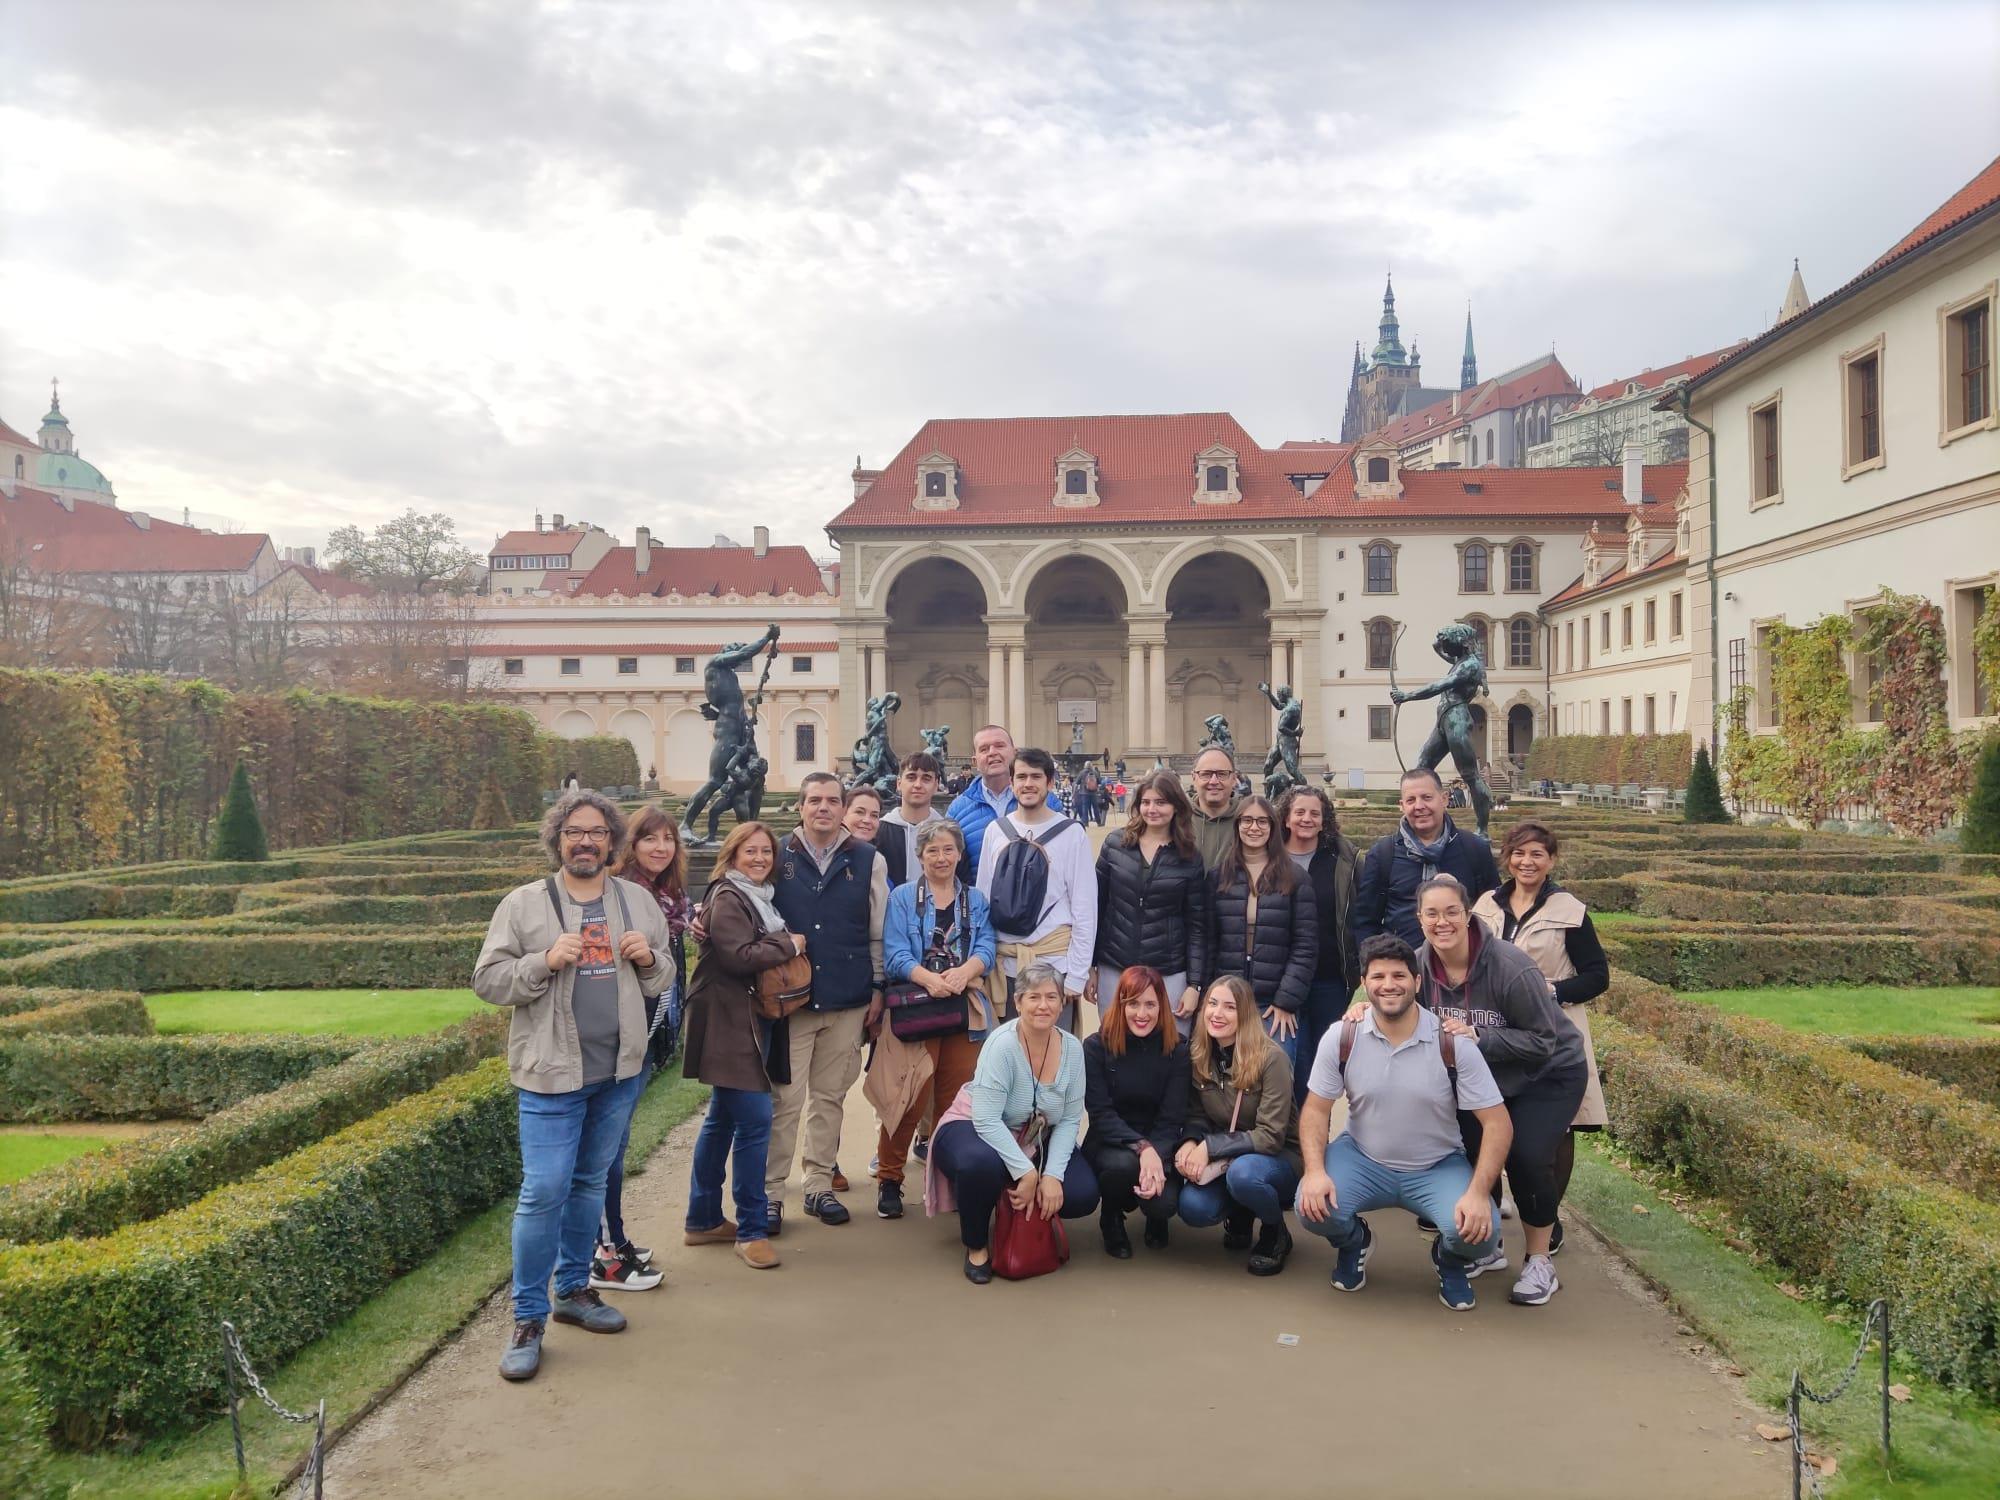 Imperial Prague Free Walking Tour